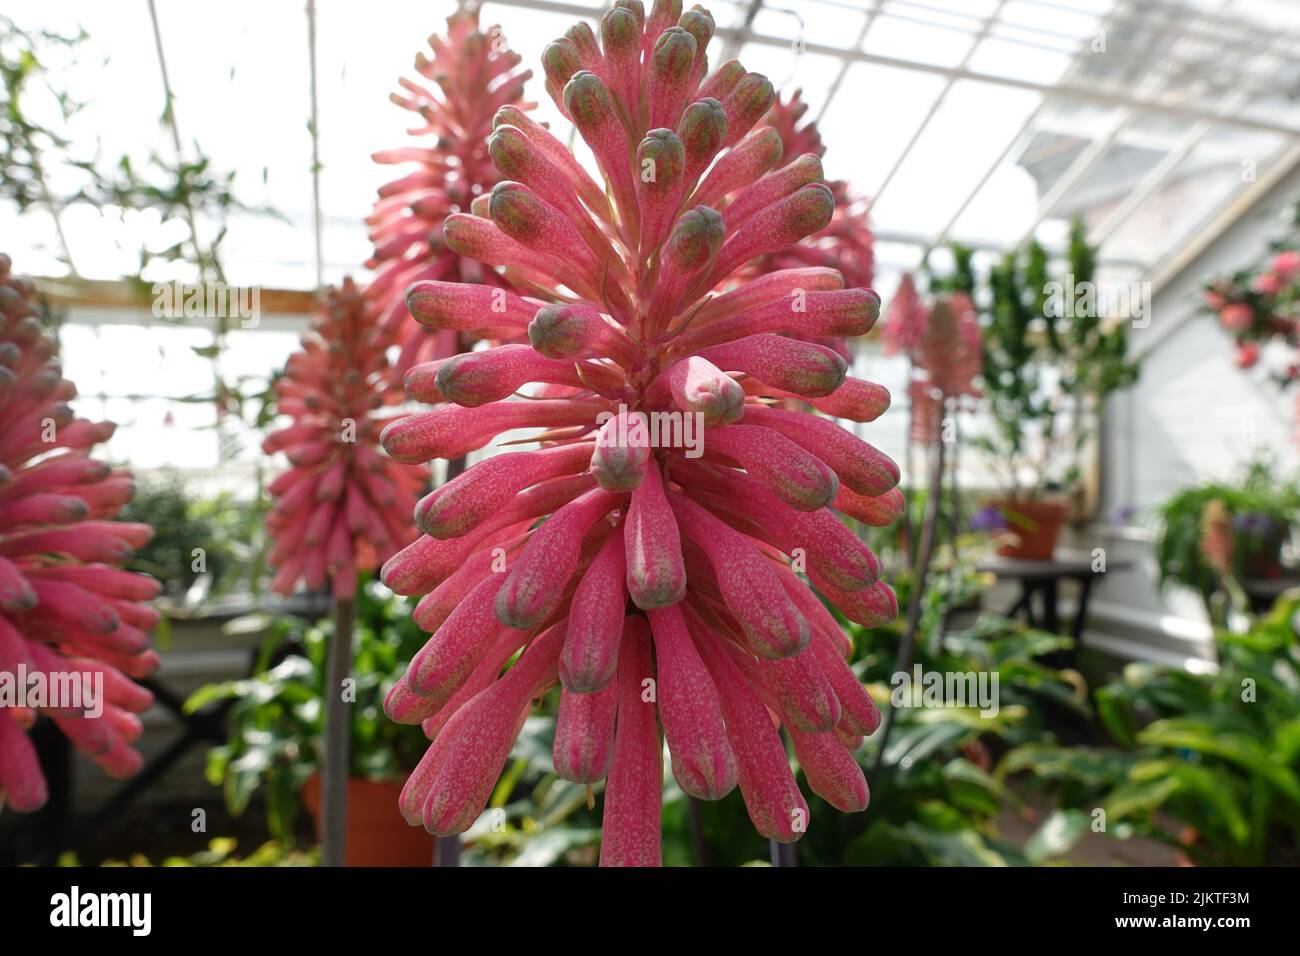 A Veltheimia Bracteata in greenhouse Stock Photo